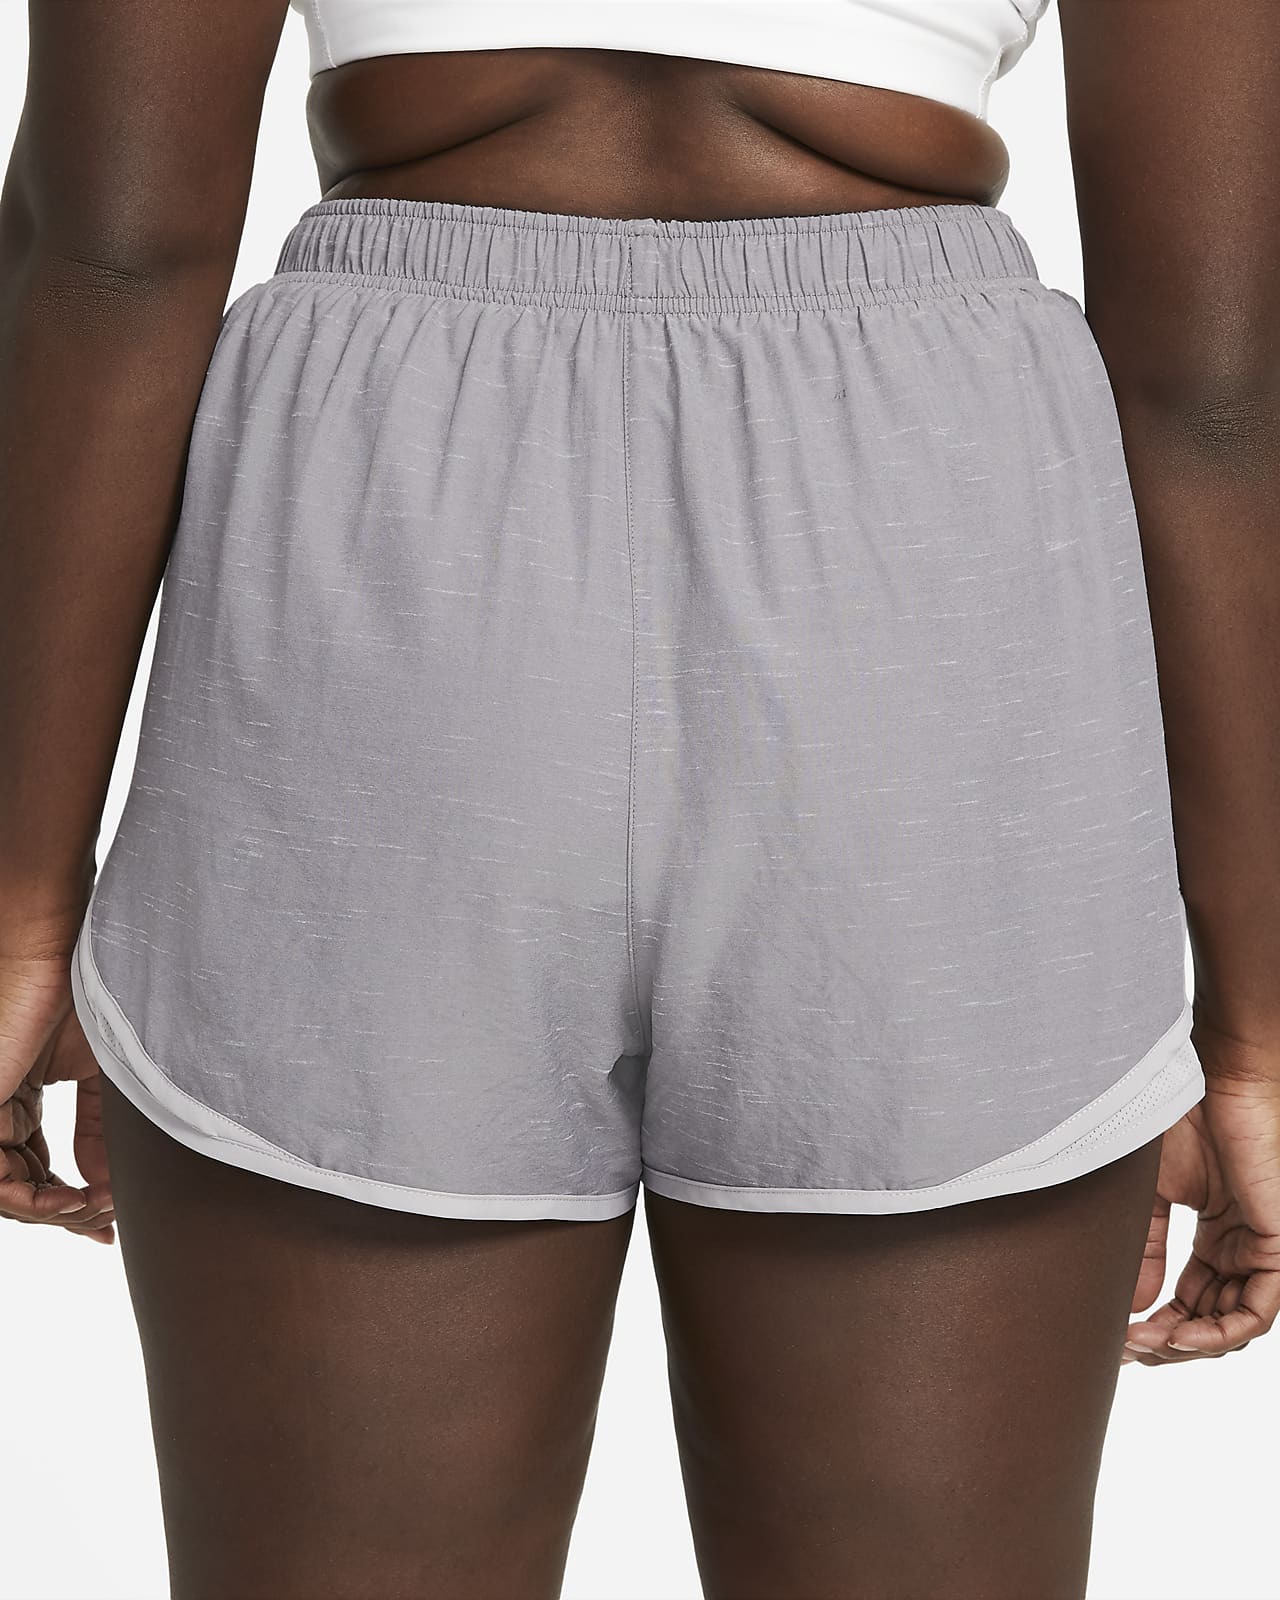 nike 2x women's shorts